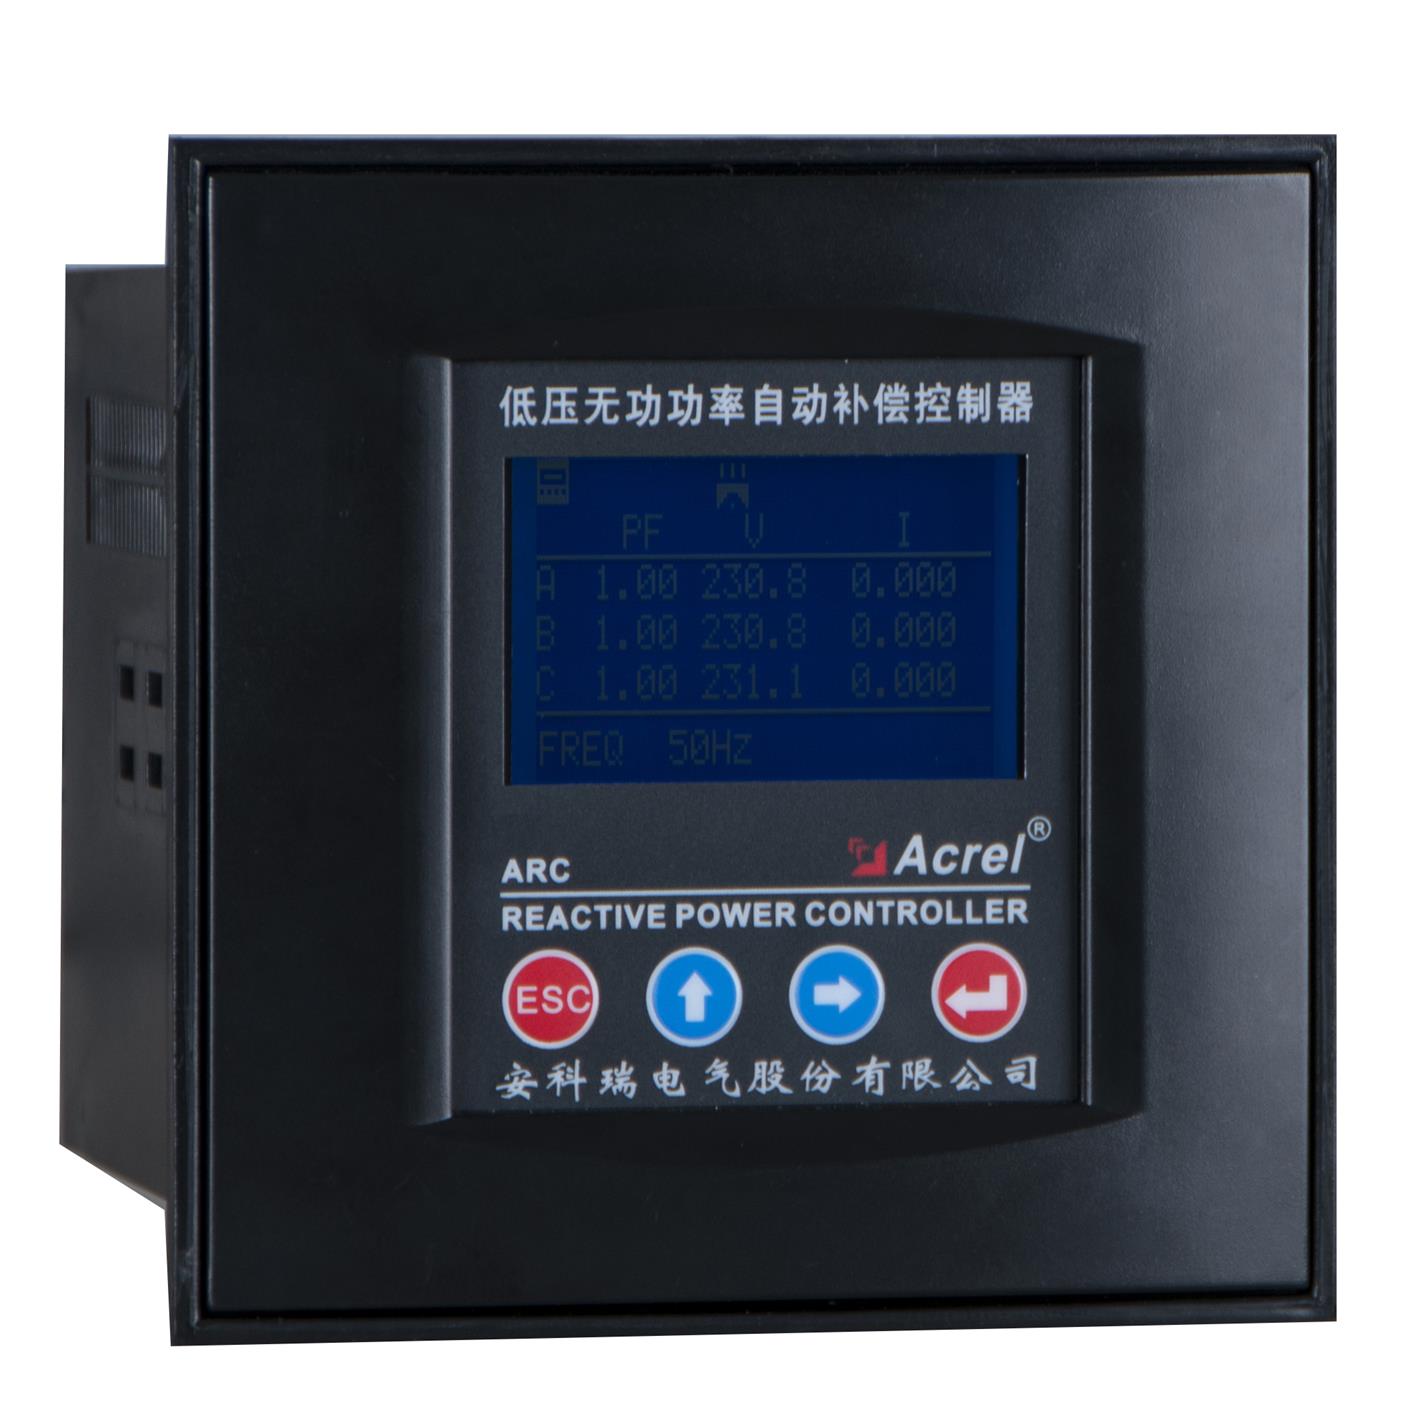 安科瑞ARC-12F/R液晶显示功率因数自动补偿控制器